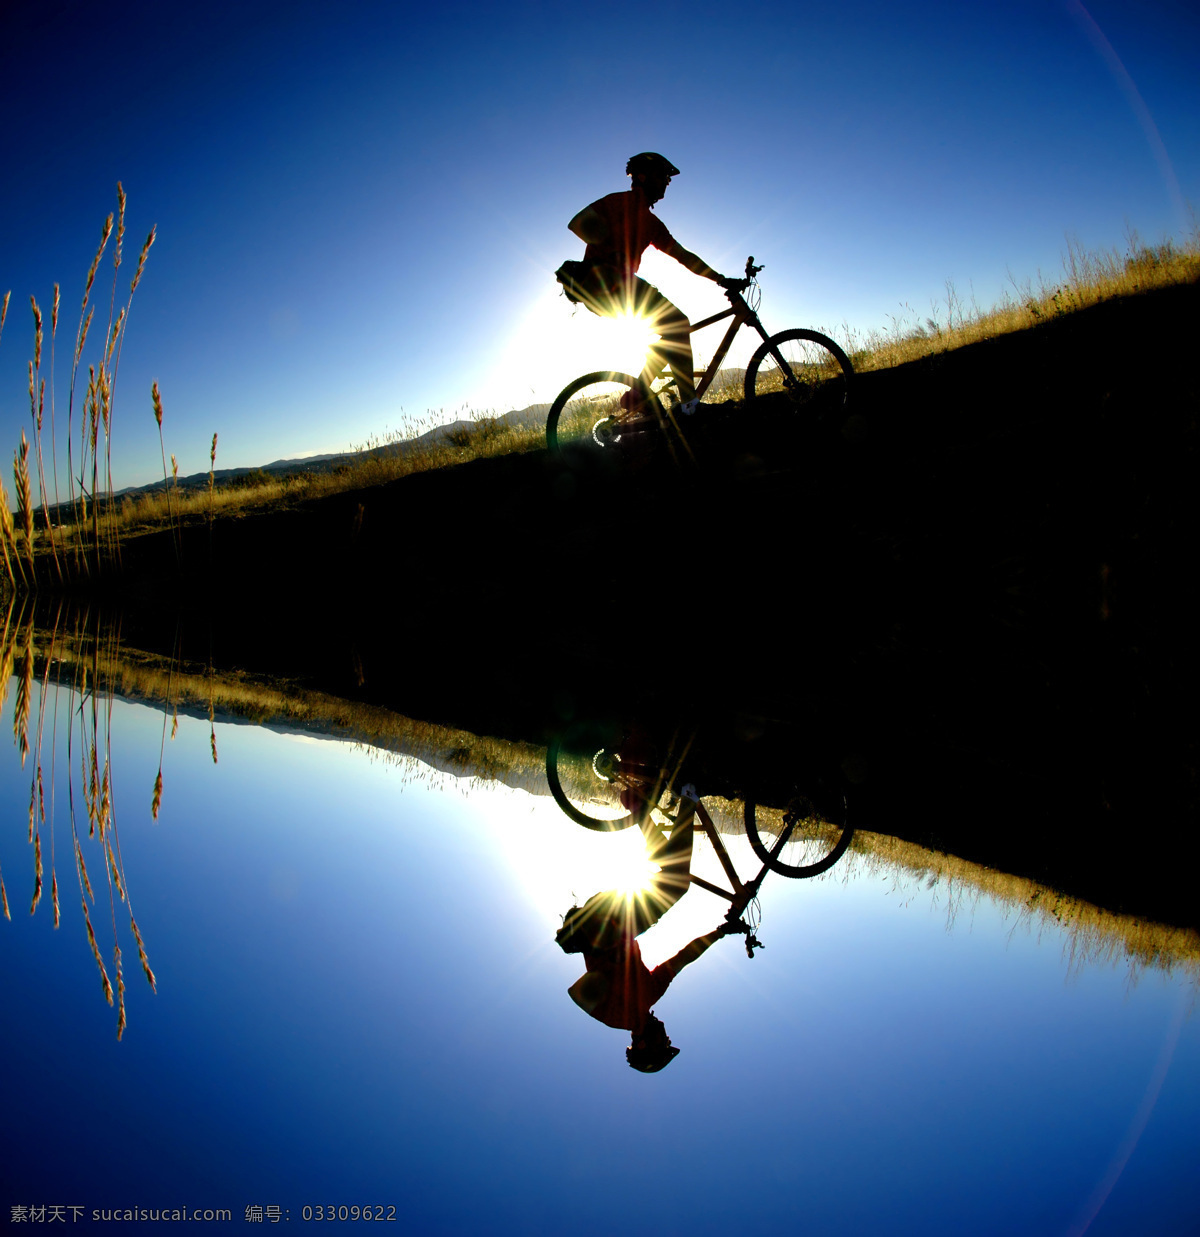 户外 自行 车骑 行 运动 越野自行车 骑车 户外骑车 骑行 体育运动 蓝天 湖水 倒影 汽车图片 现代科技